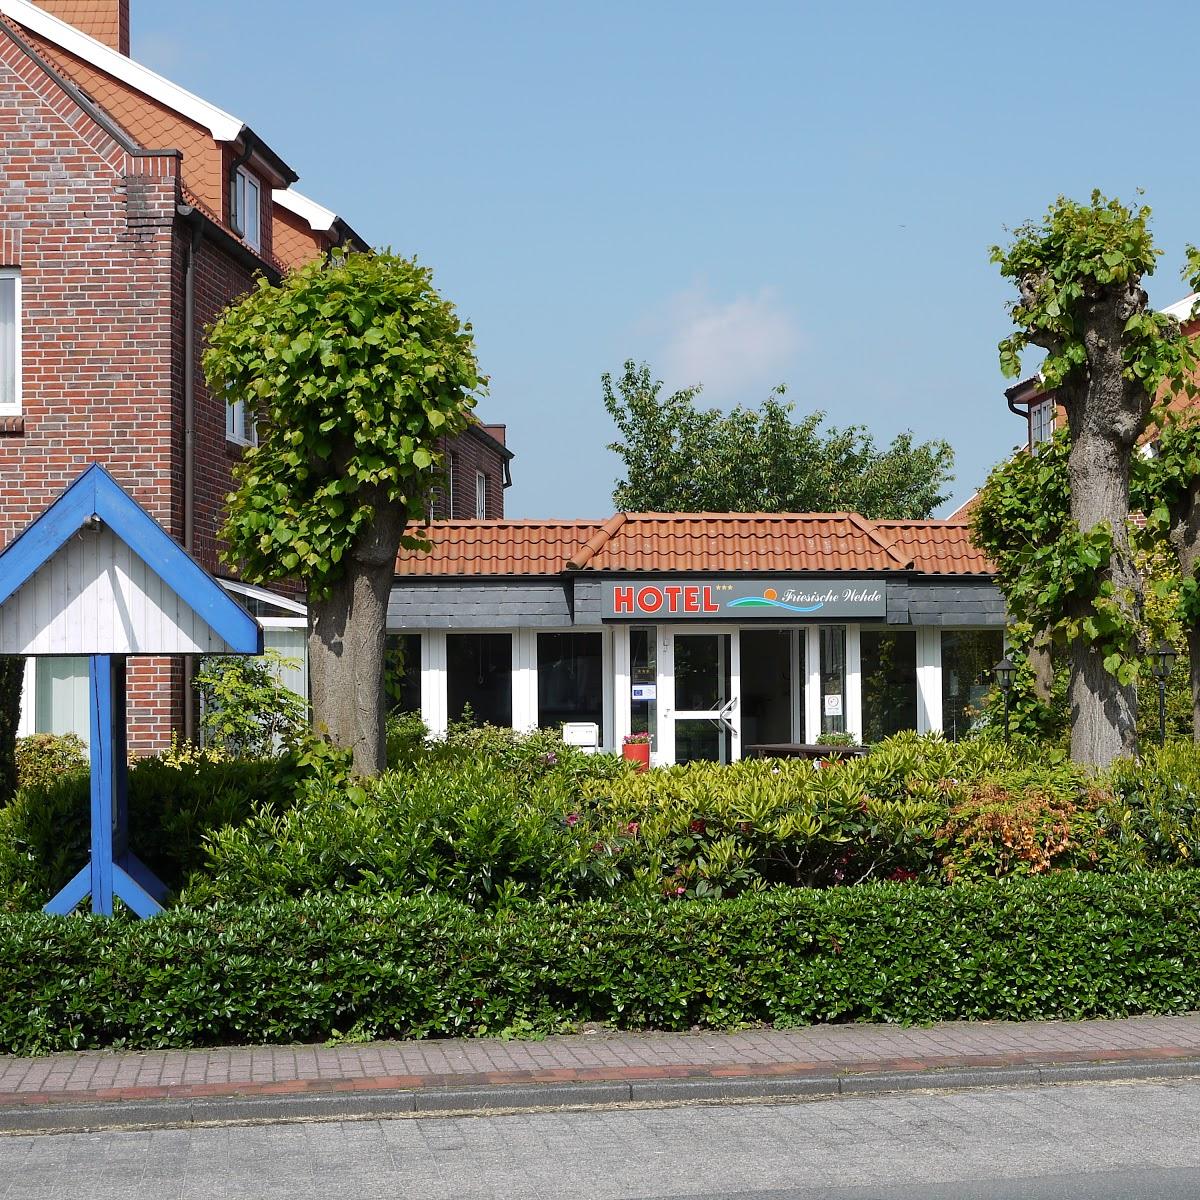 Restaurant "Friesische Wehde" in Bockhorn